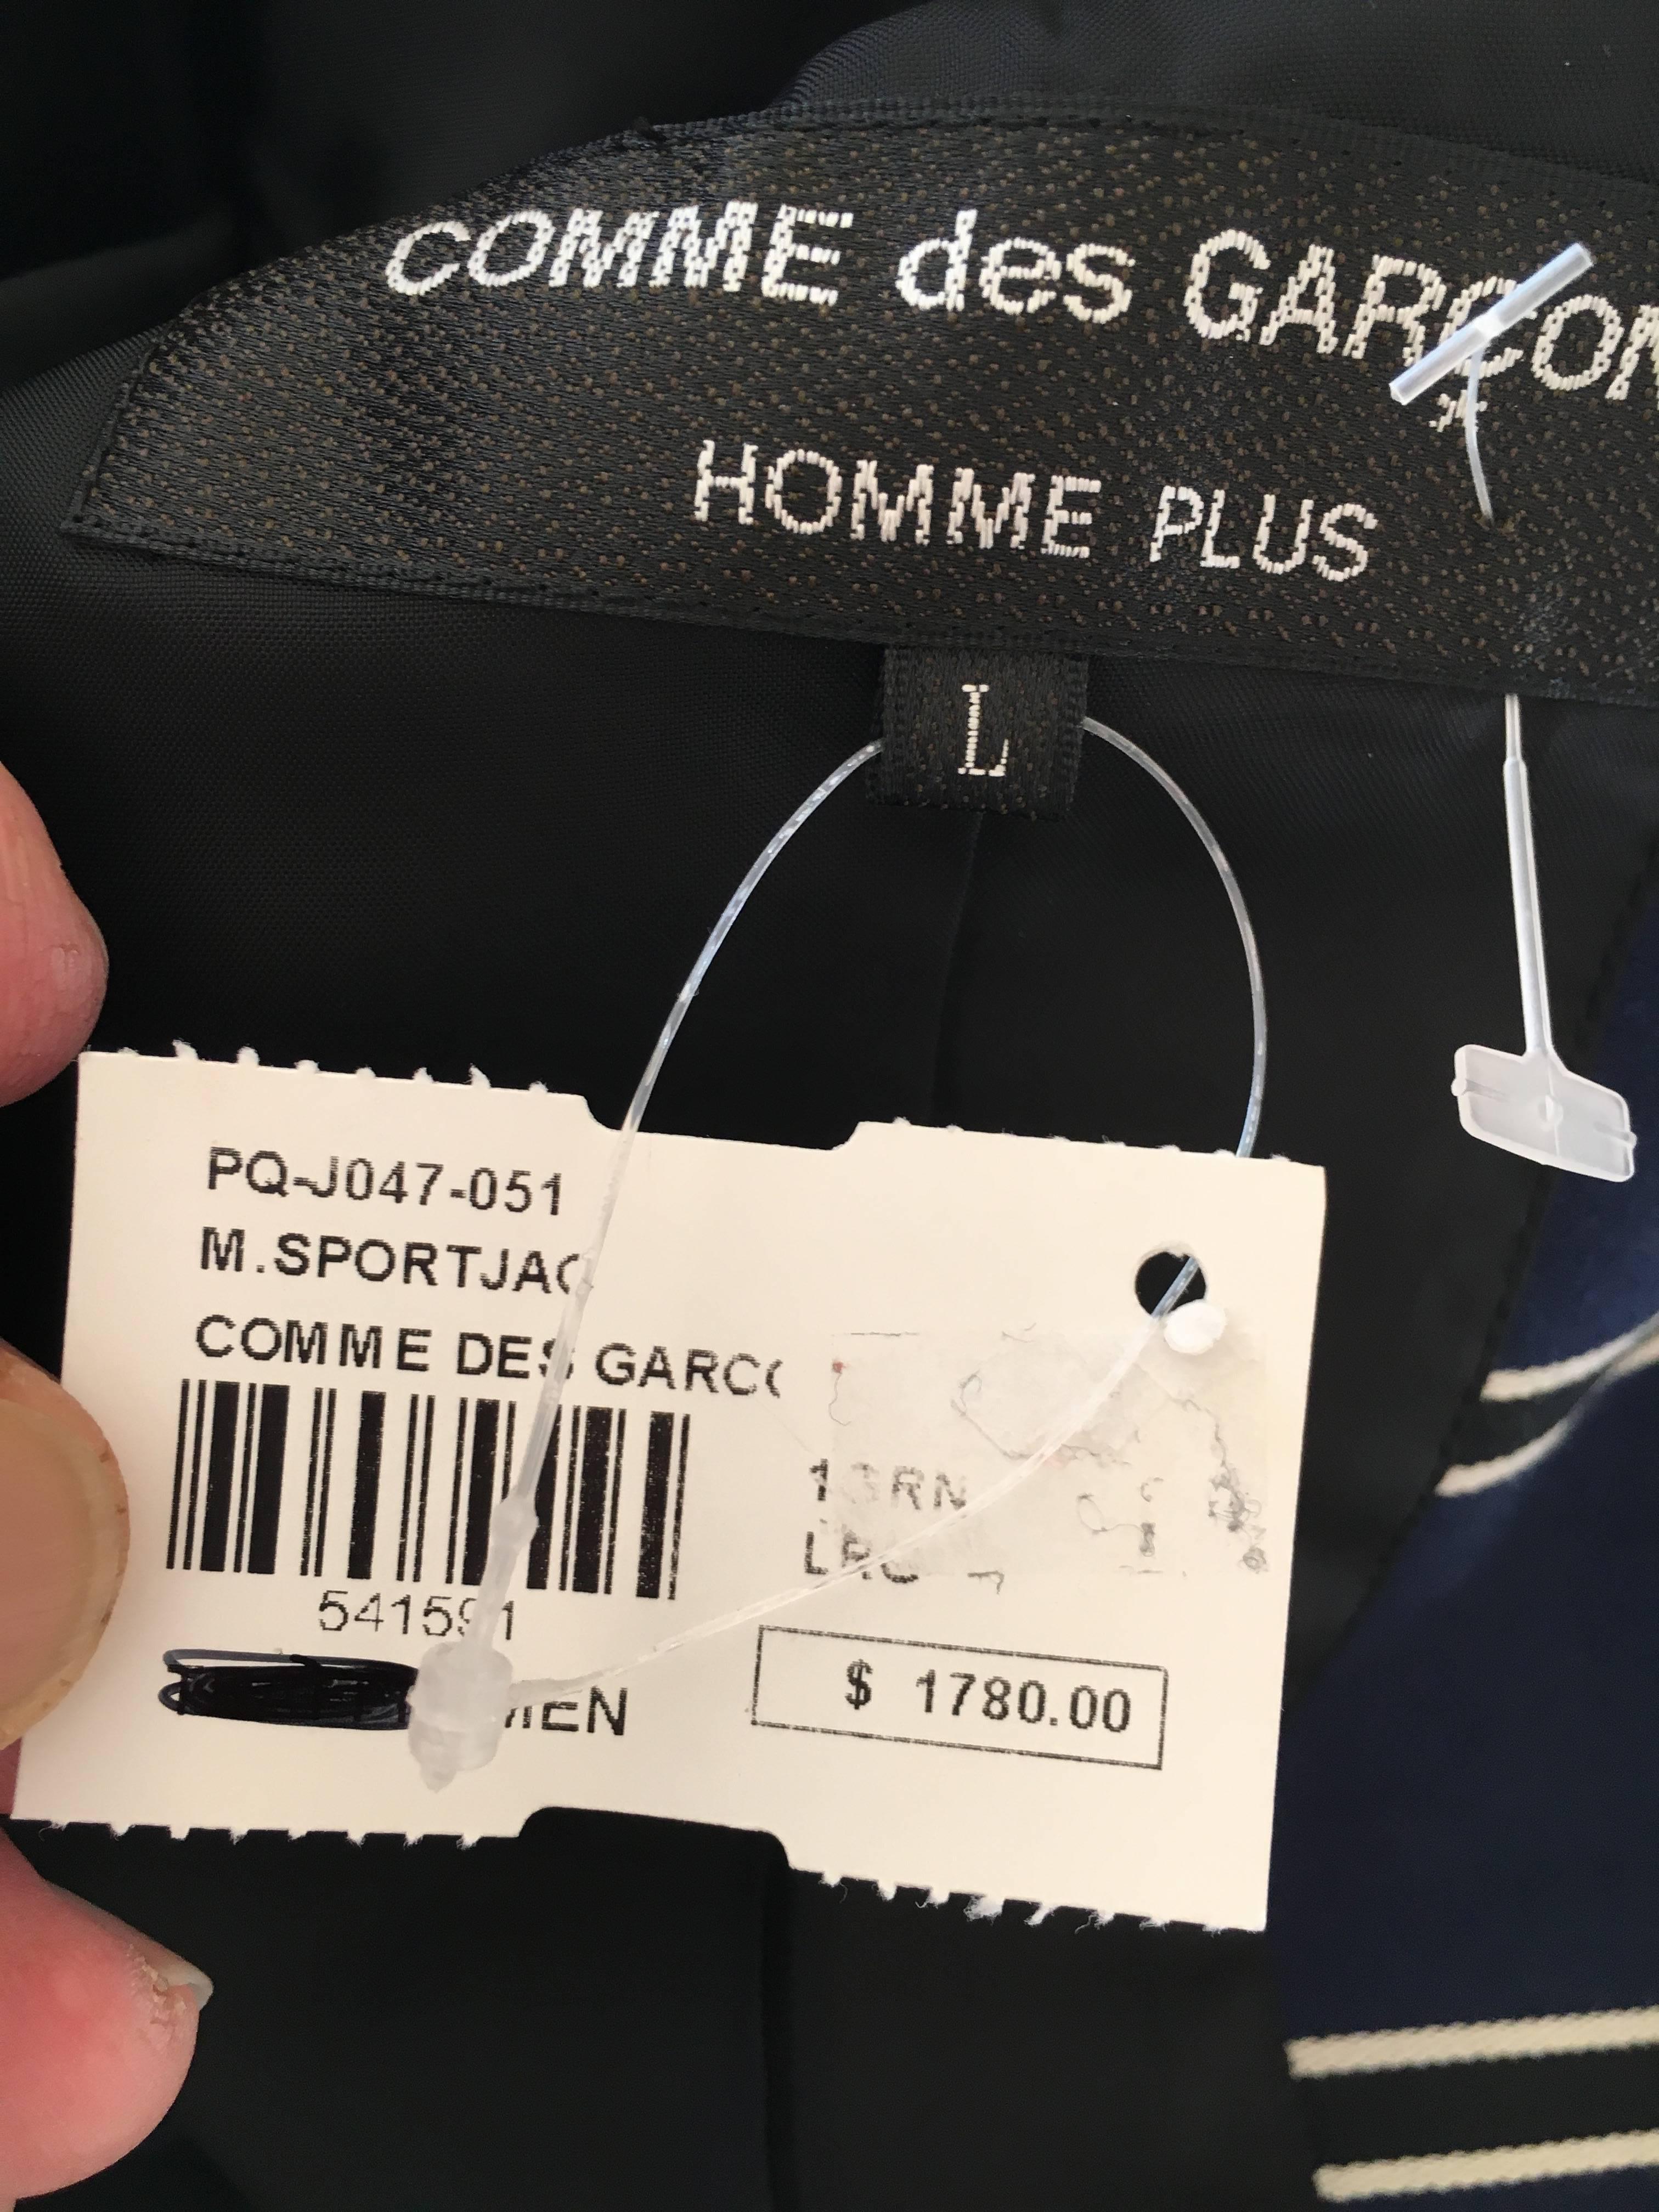 Comme des Garcons Homme Plus Stripe Jacket with Tartan Trim NWT For Sale 4